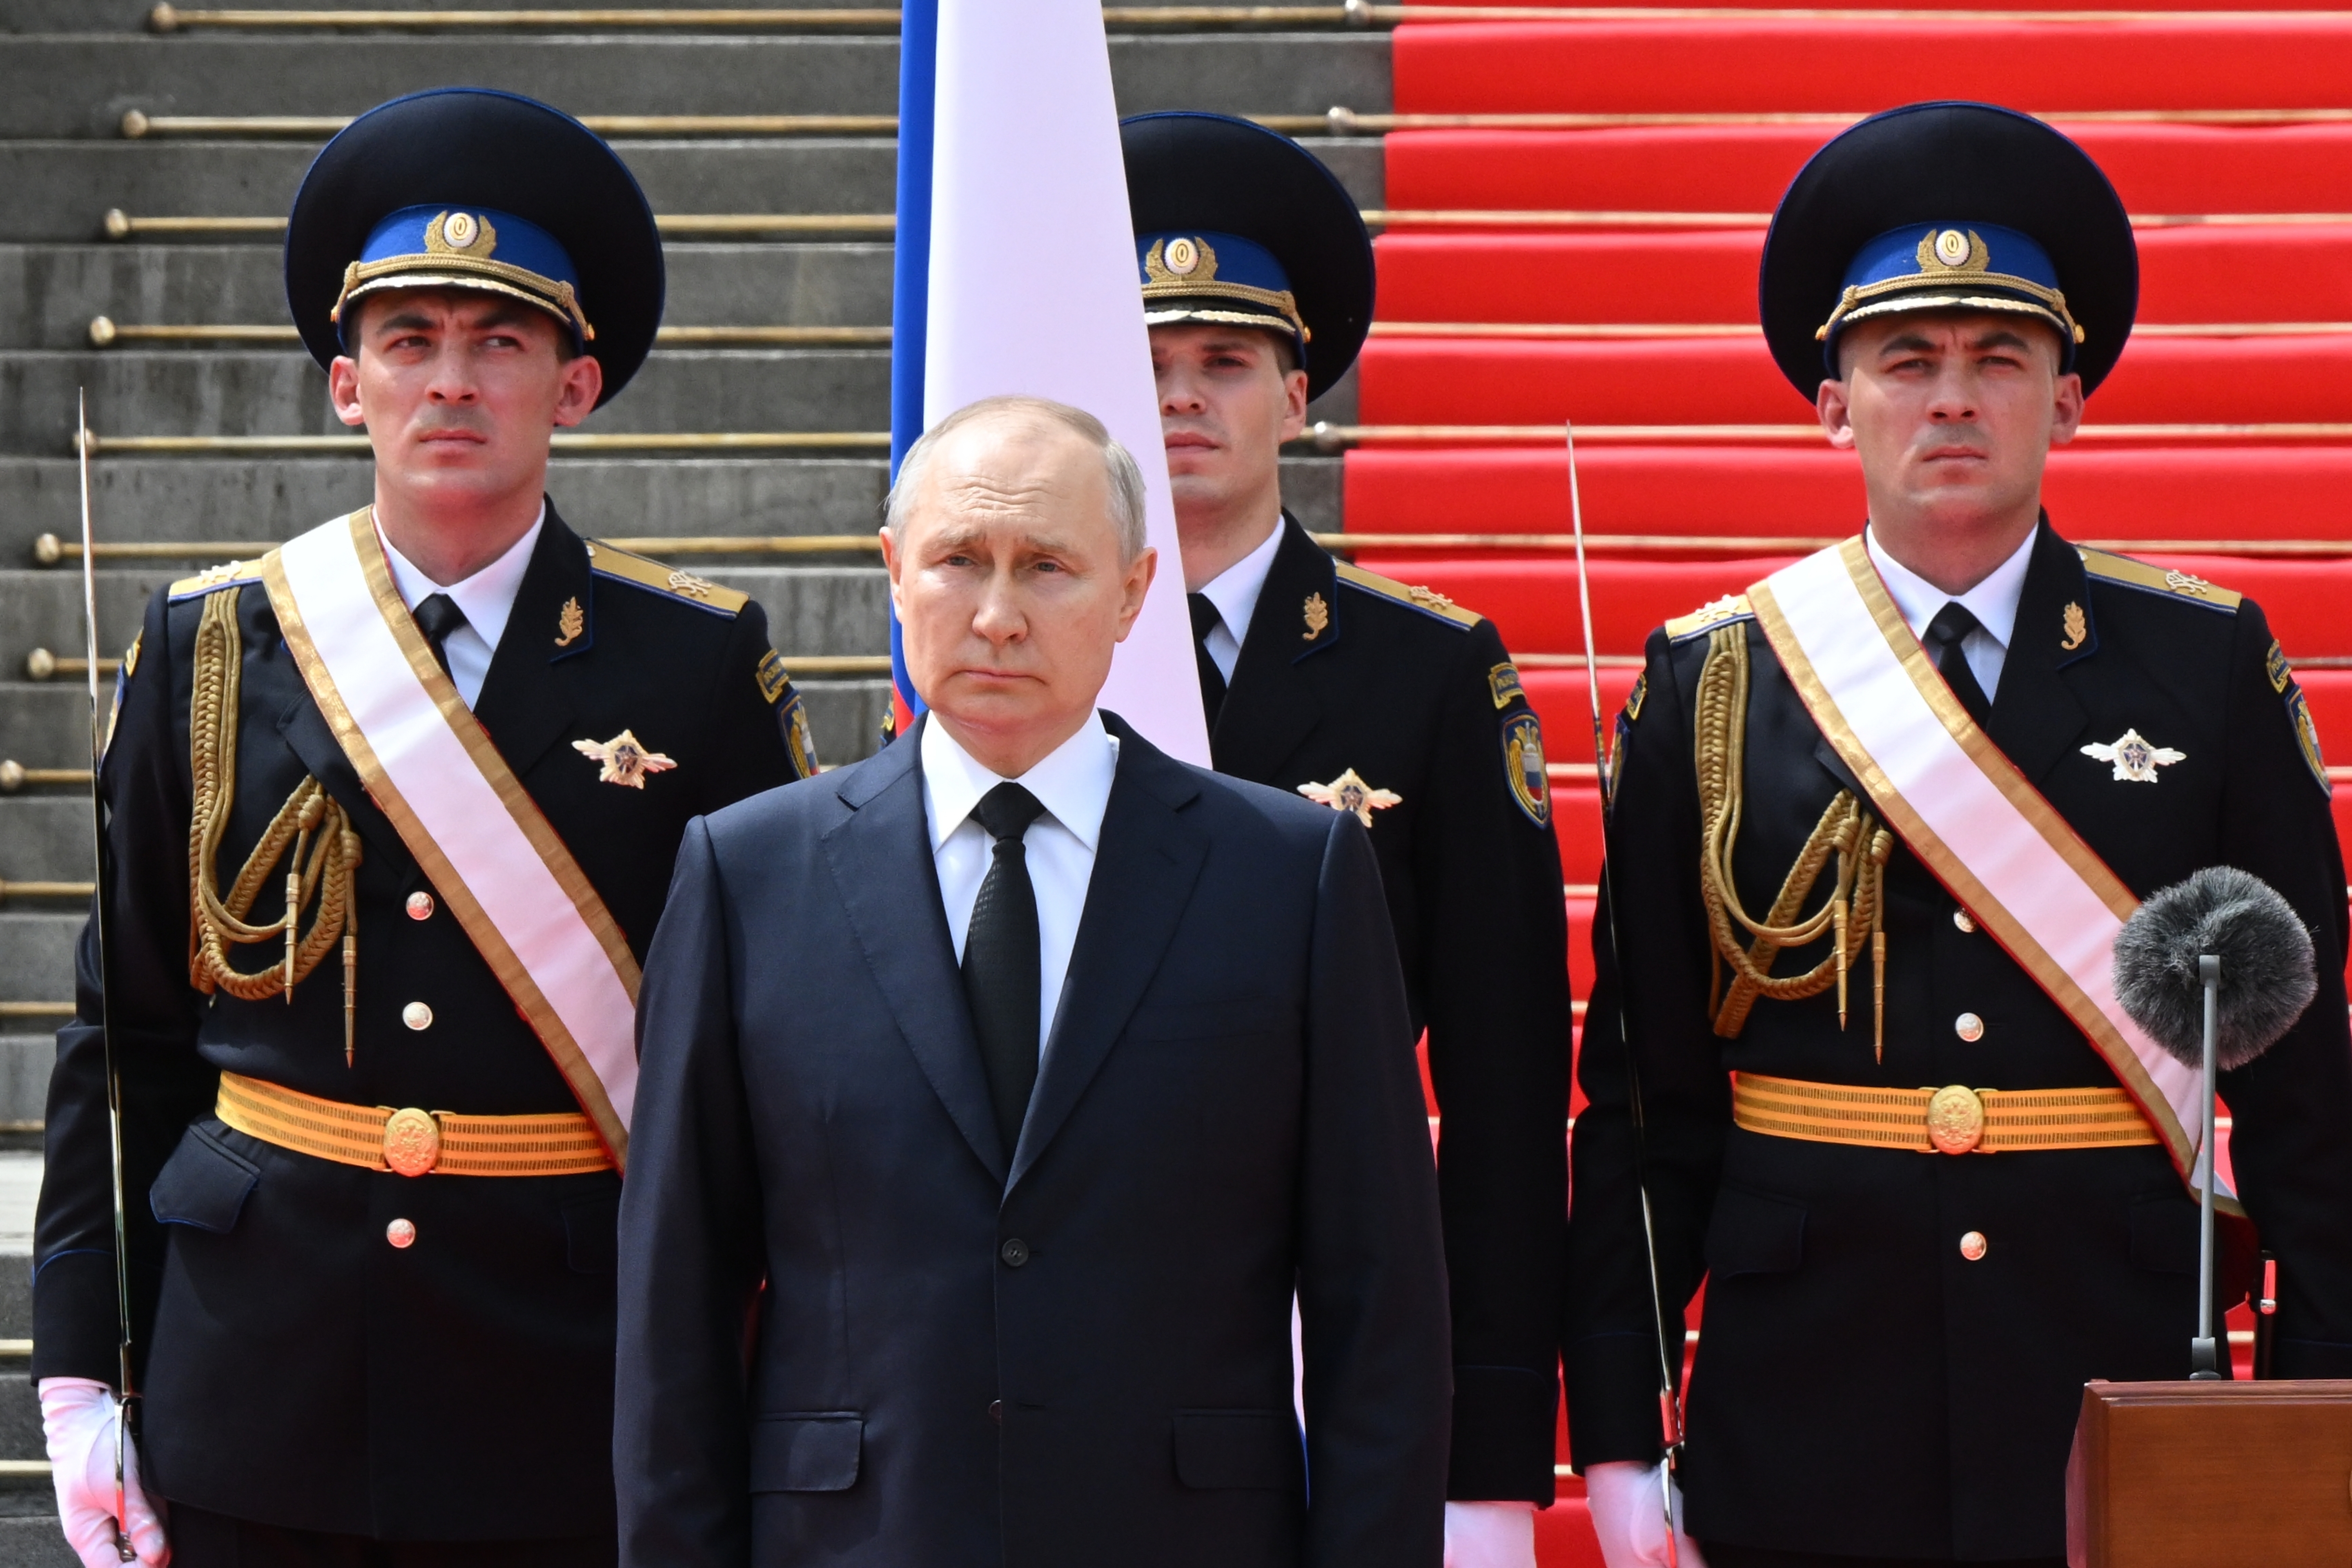 Putin versucht seit dem Putsch ein Bild der Stärke zu vermitteln